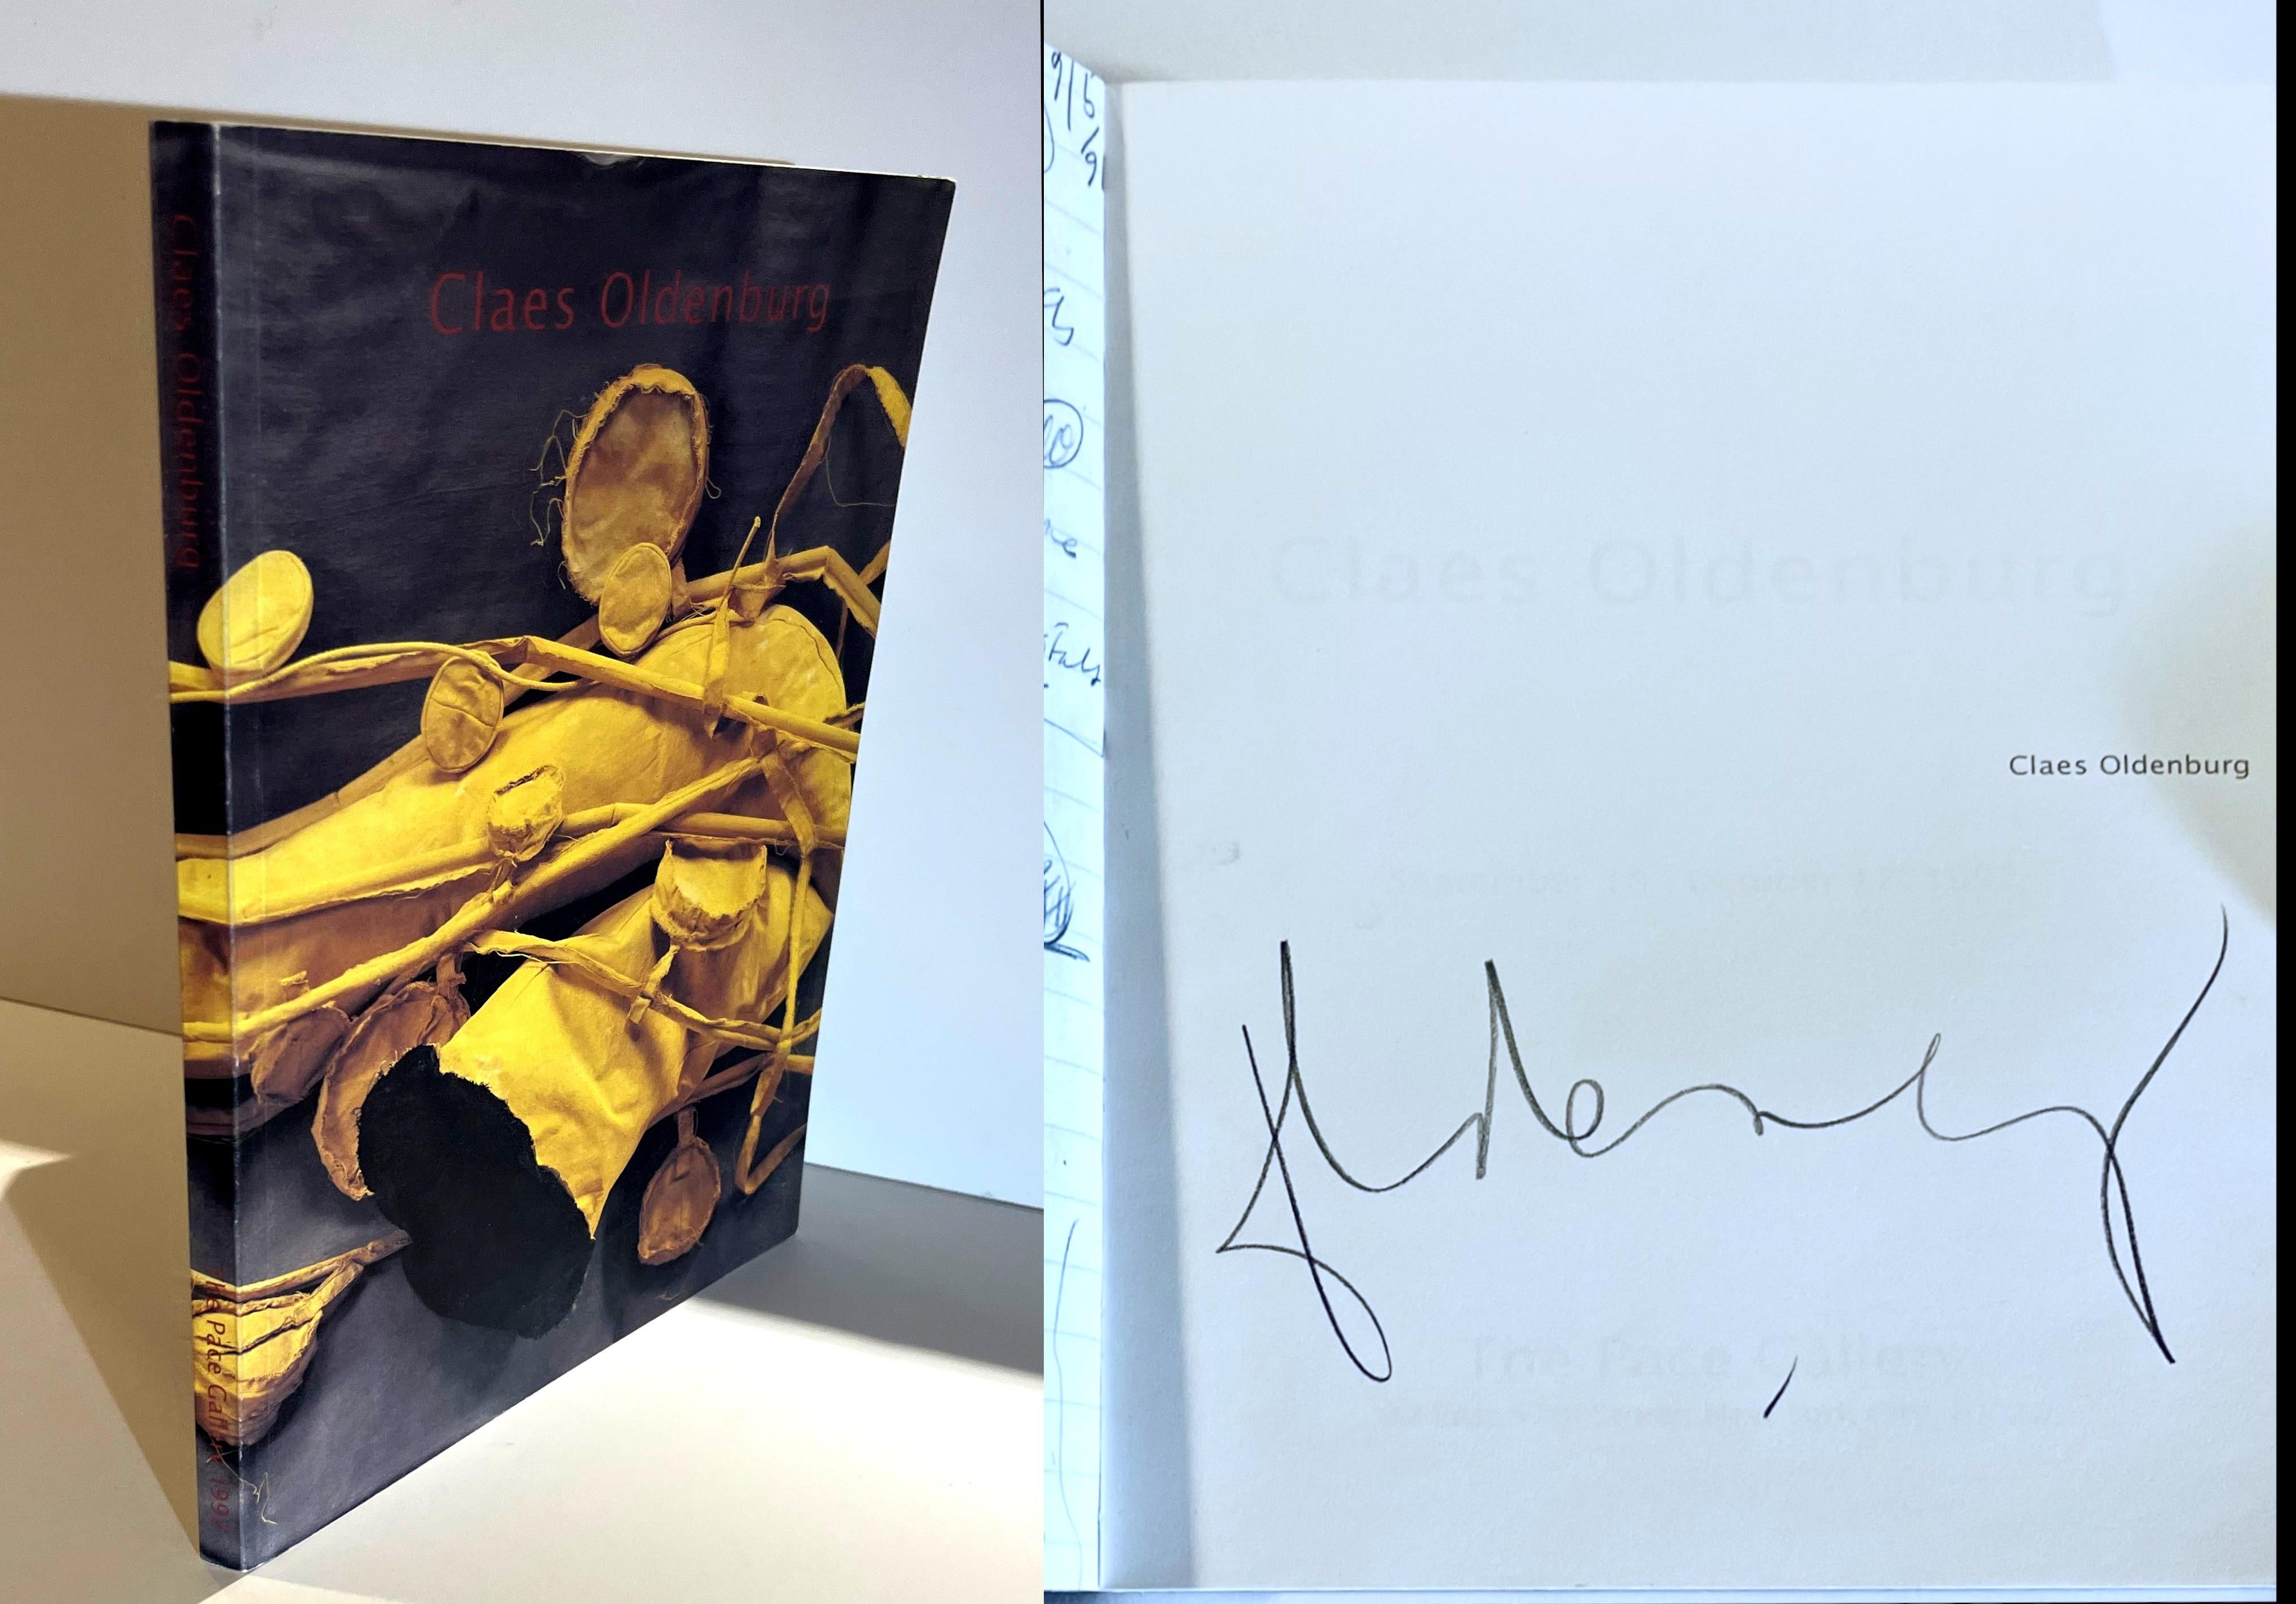 Claes Oldenburg, Claes Oldenburg (Hand signiert von Claes Oldenburg), 1992